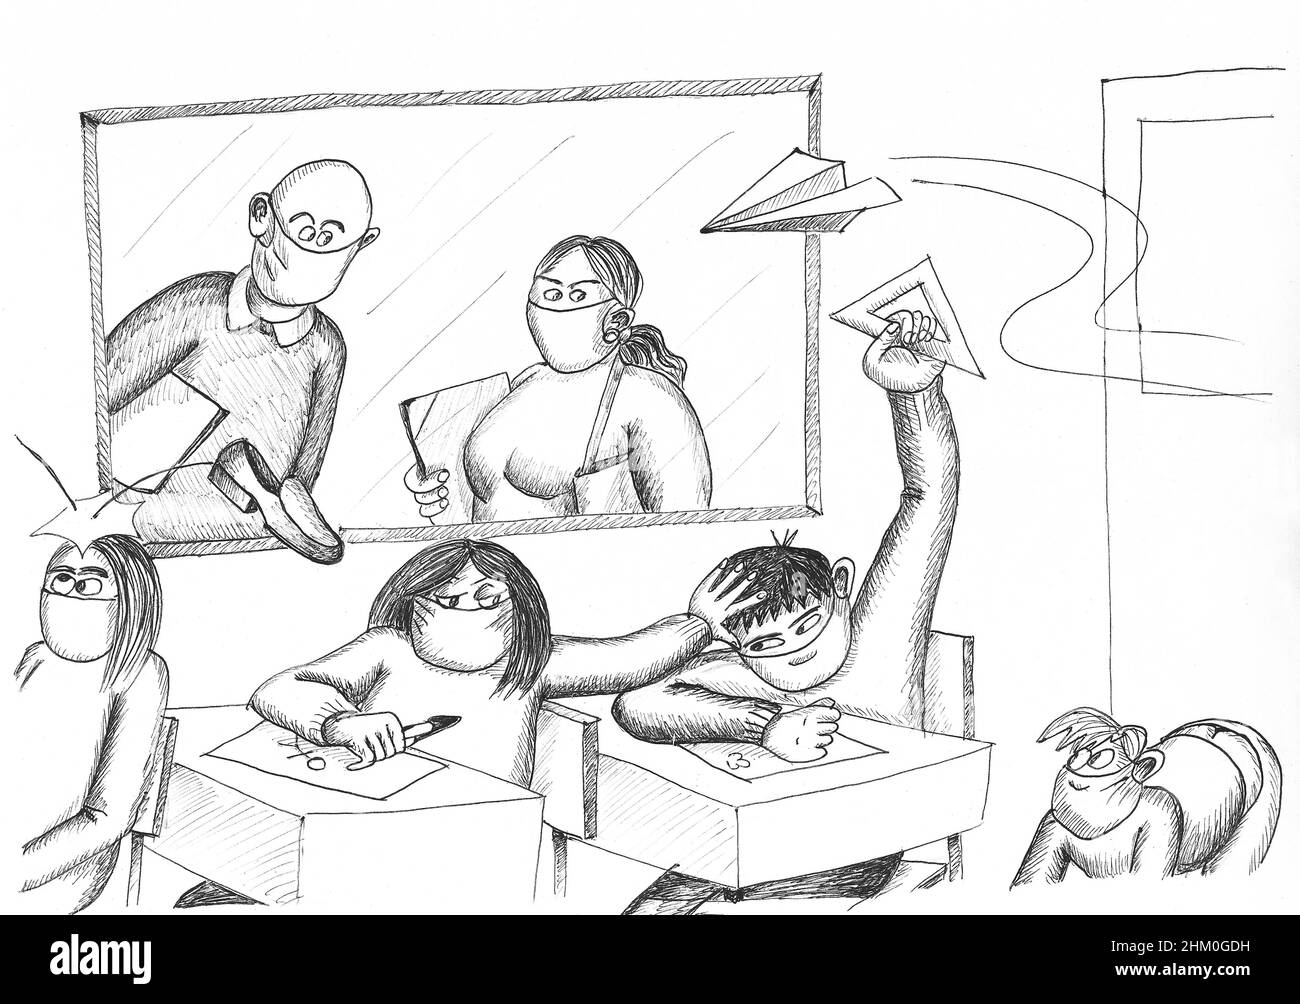 Lehrer beobachten Schüler schlechtes Verhalten in der Klasse. Abbildung. Stockfoto